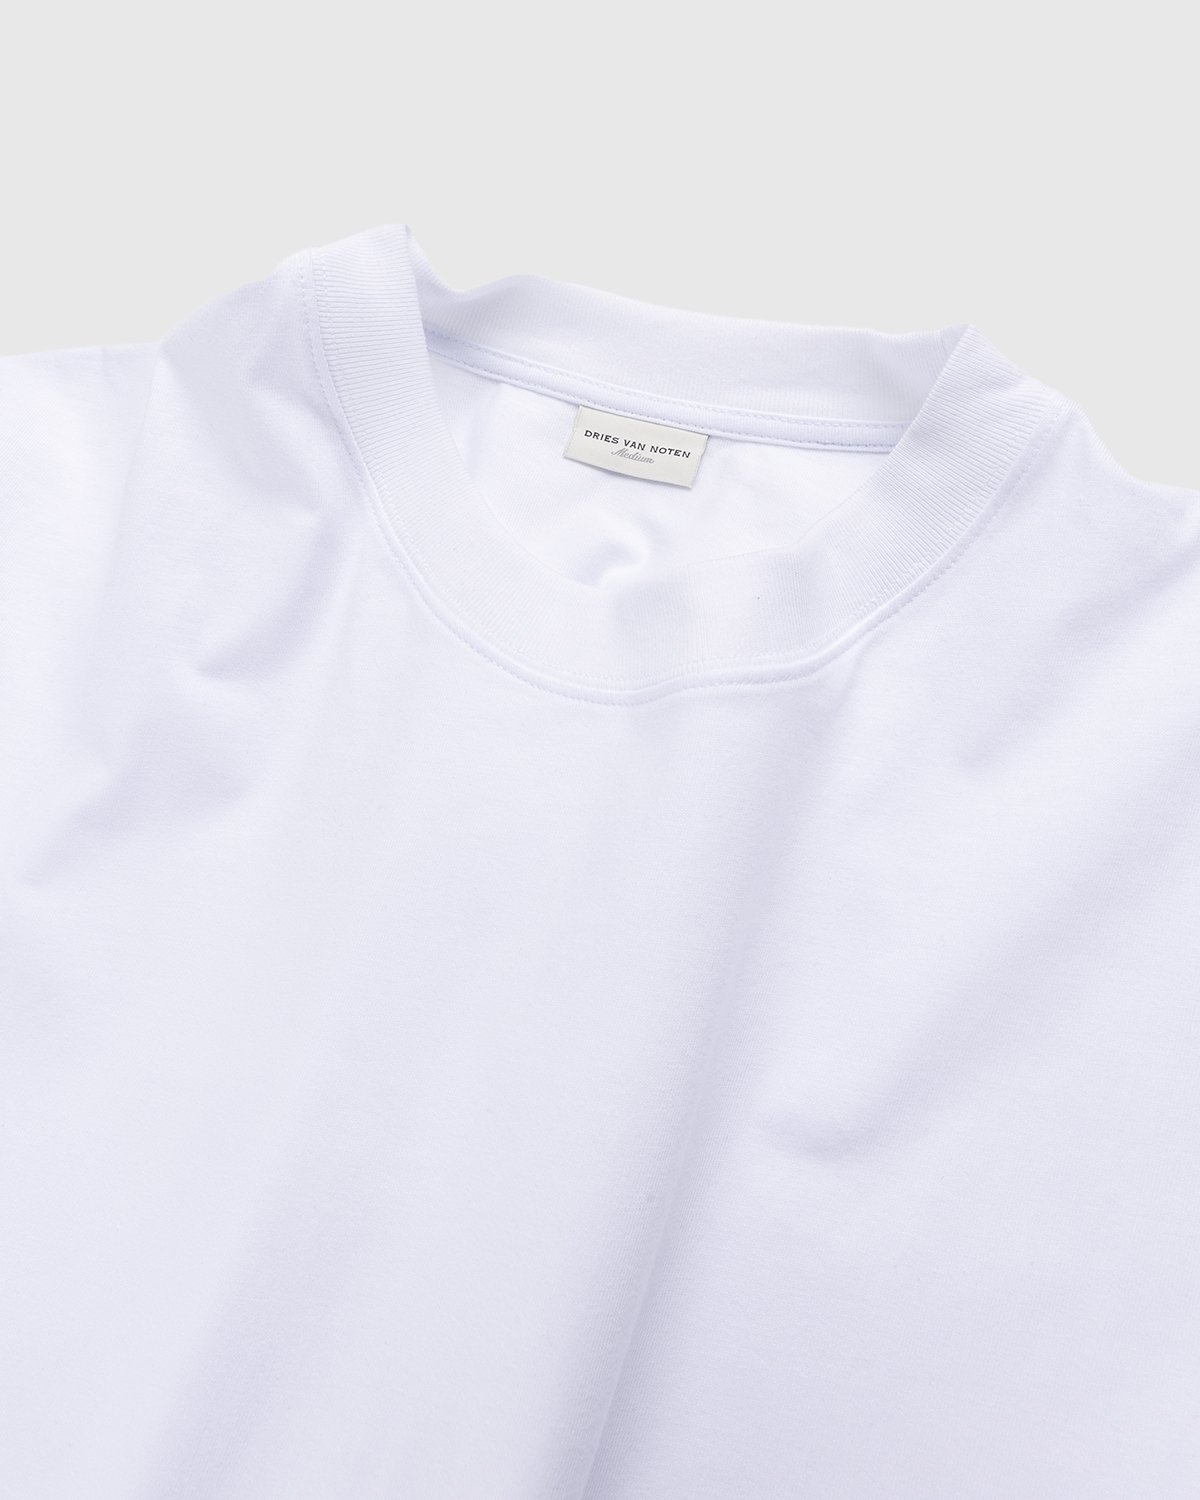 Dries van Noten – Hen Oversized T-Shirt White - T-Shirts - White - Image 3